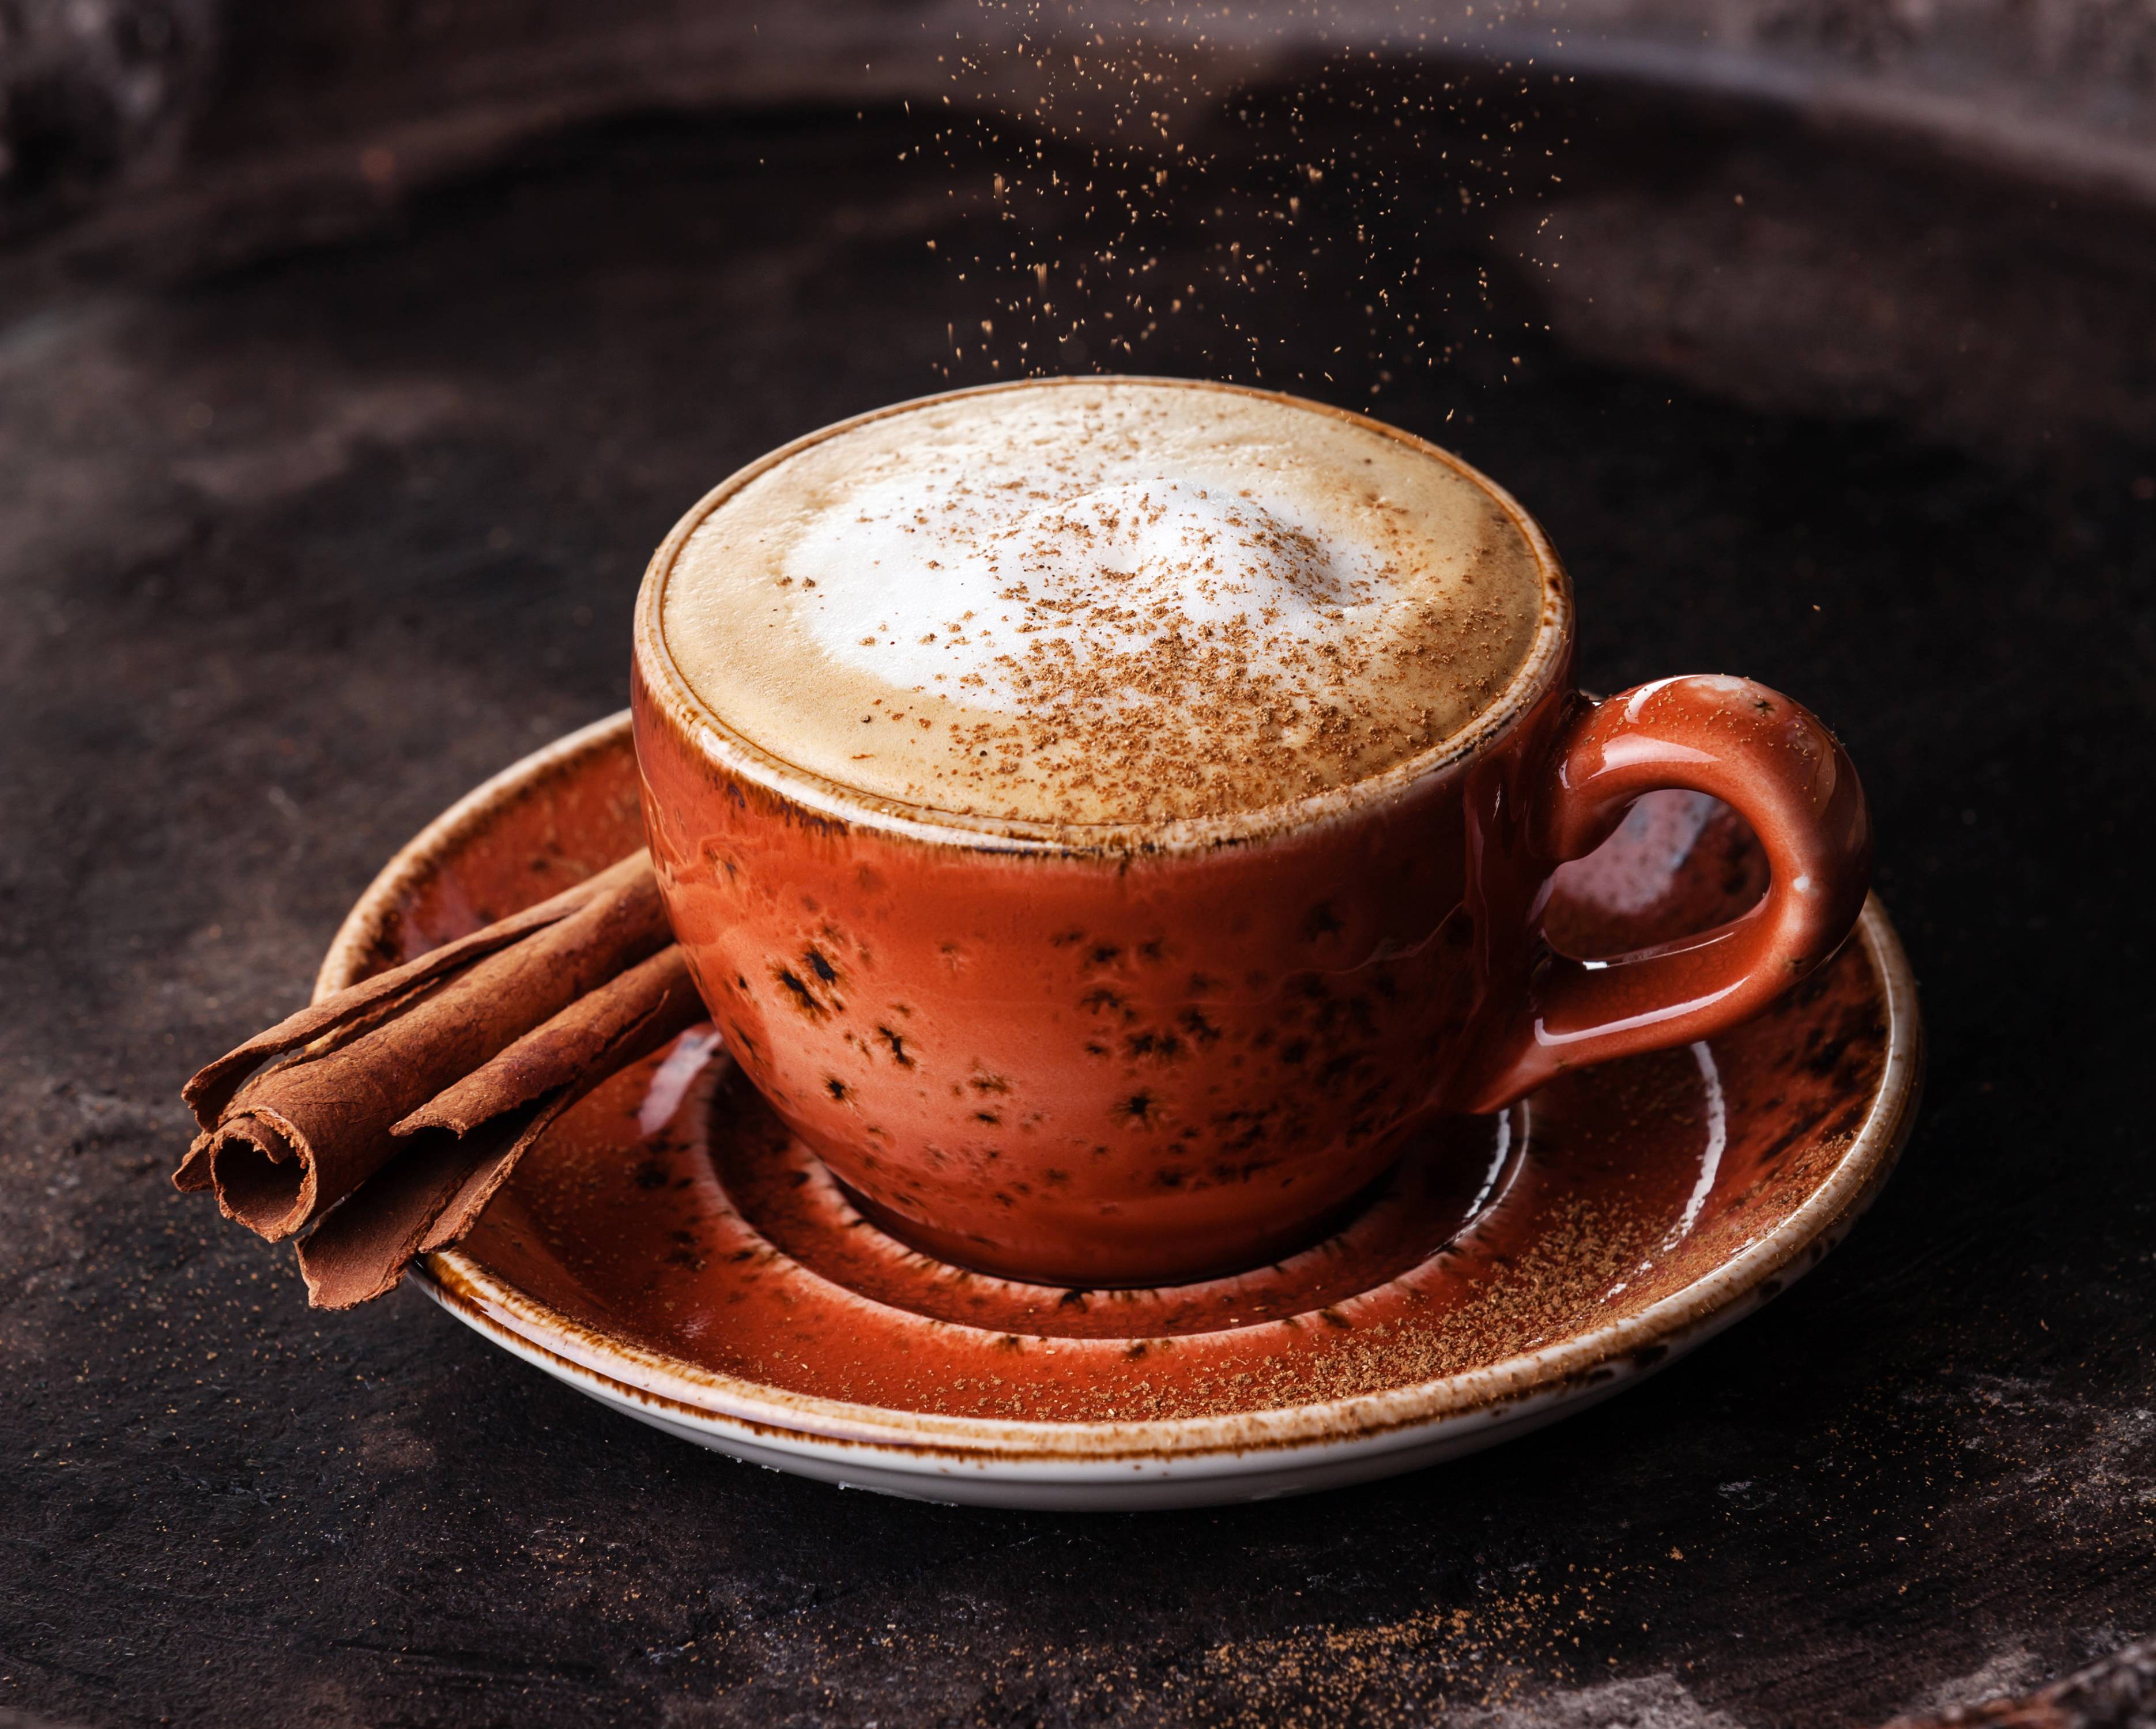 Кофе с ромом: рецепт, пропорции, история